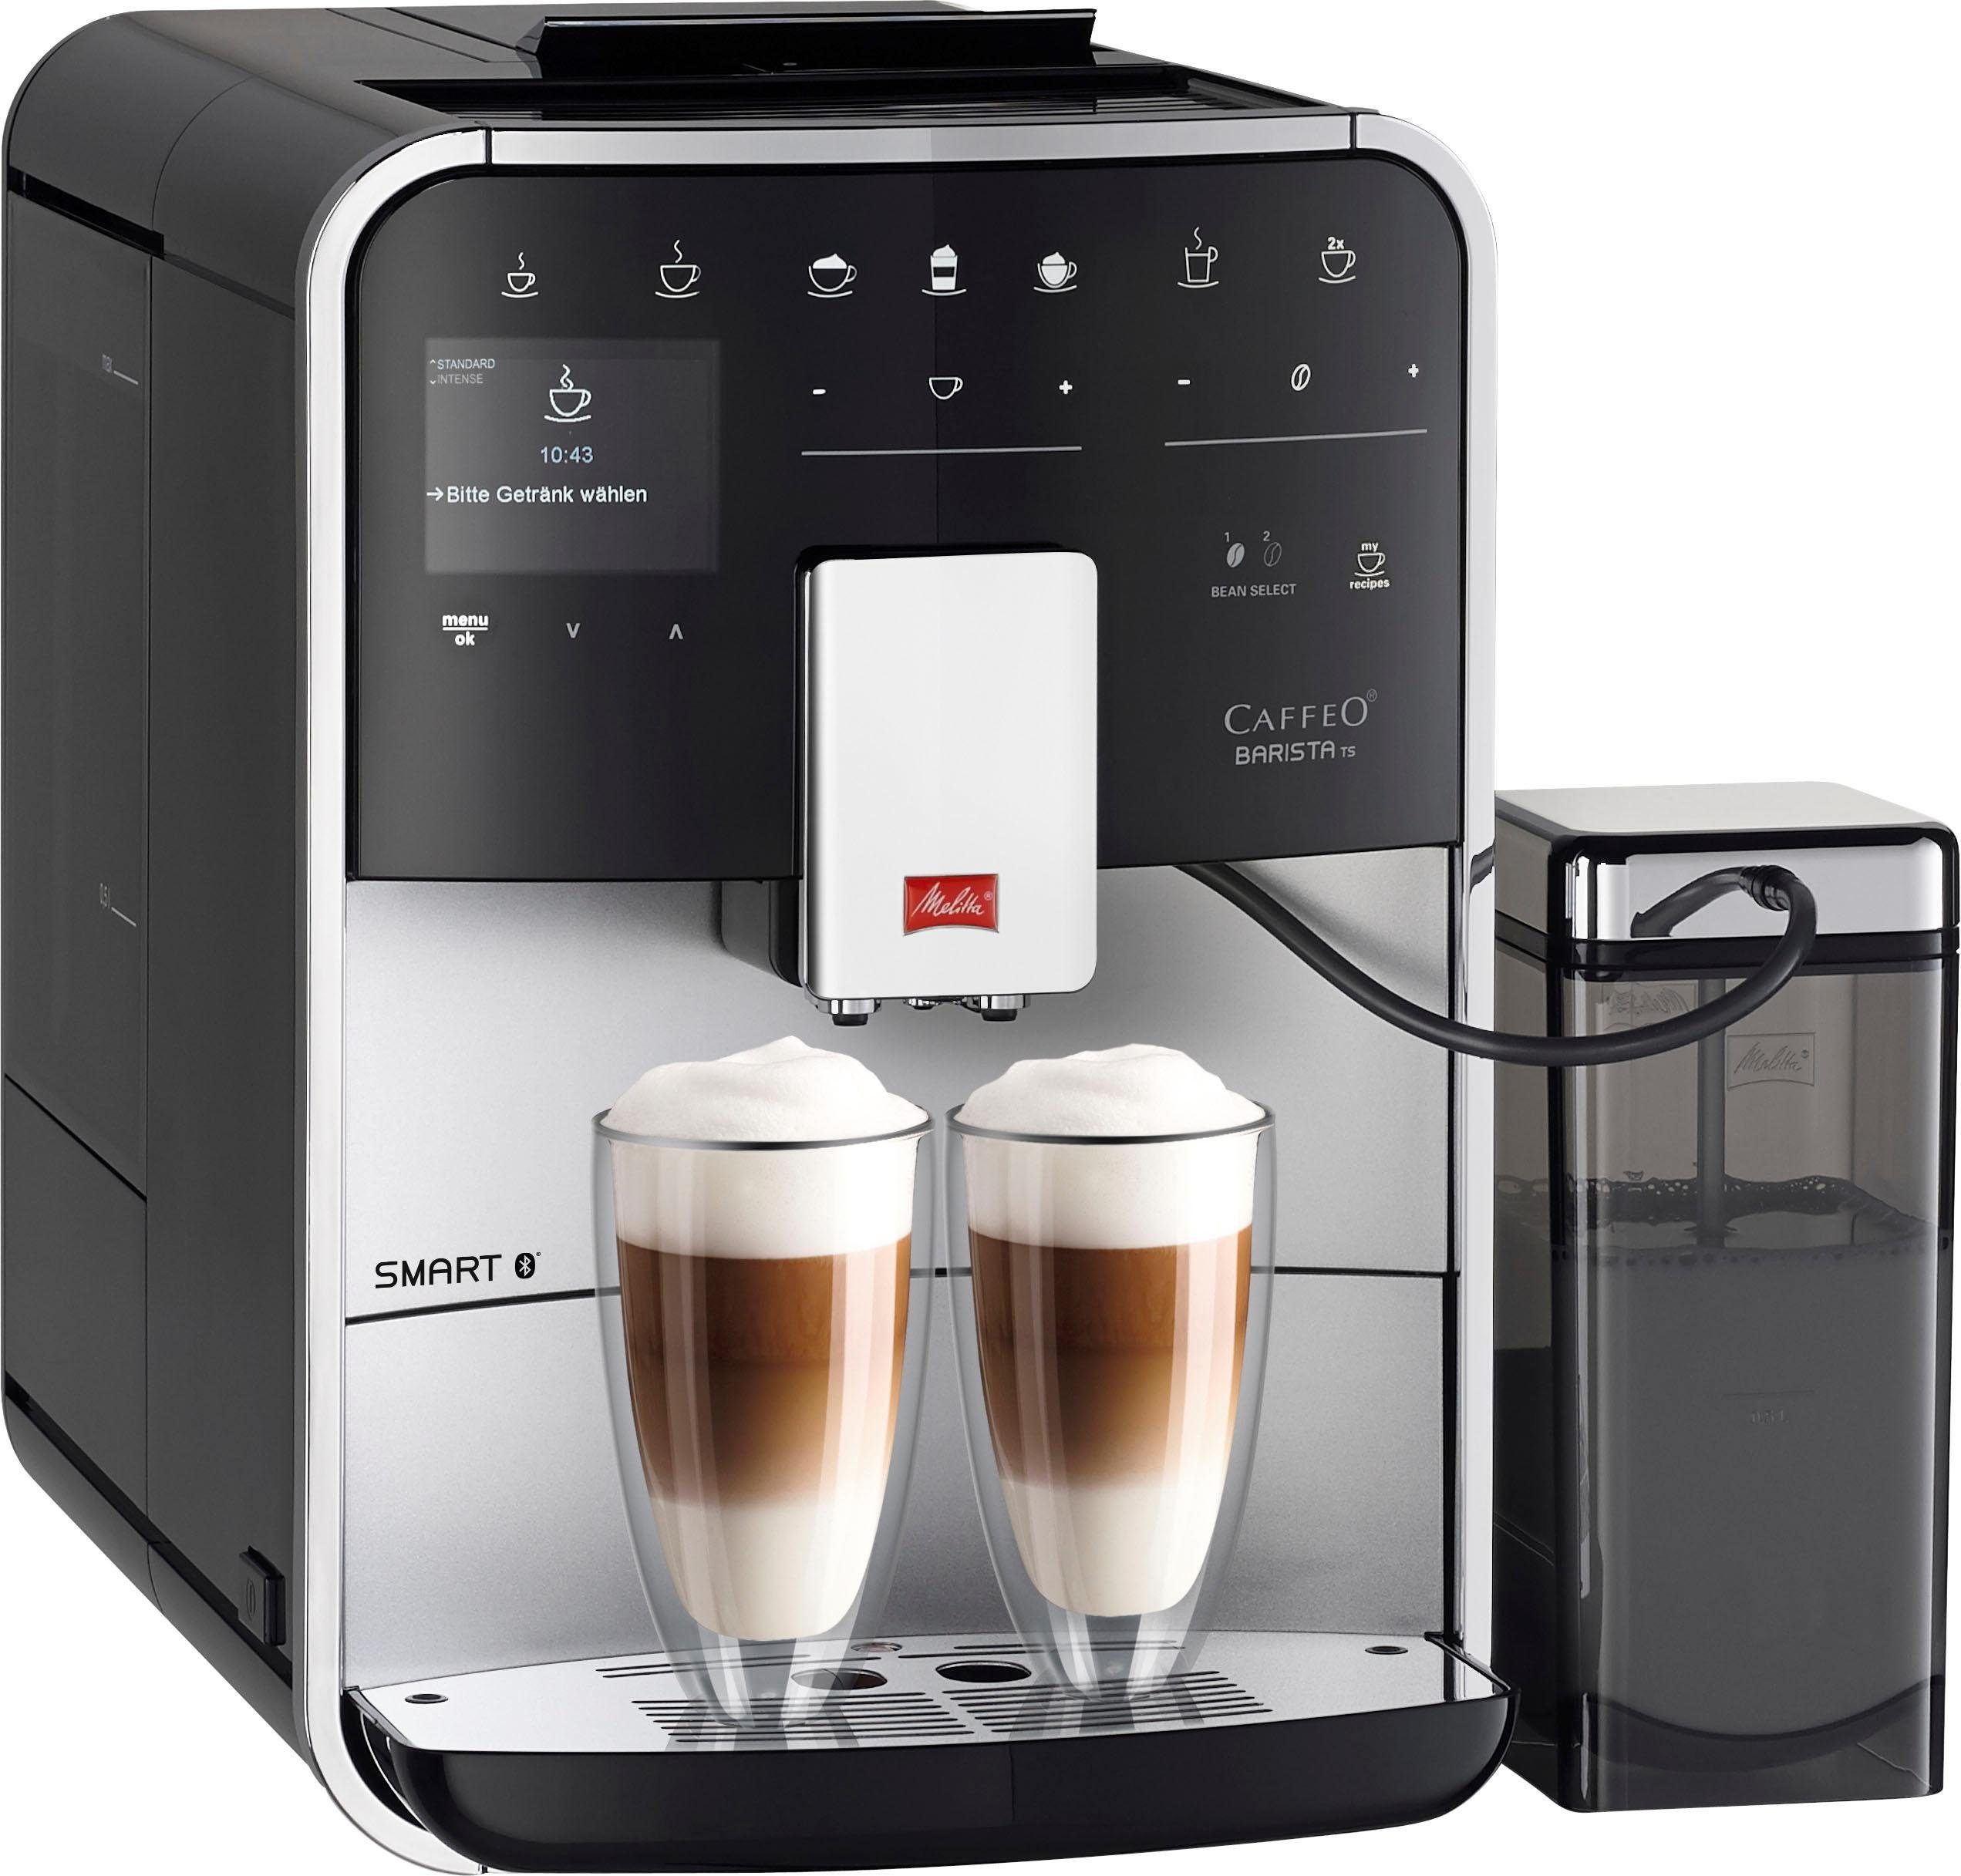 Melitta volautomatisch koffiezetapparaat Melitta®CAFFEO Barista TS Smart® F85-0-101, zilver-zwart